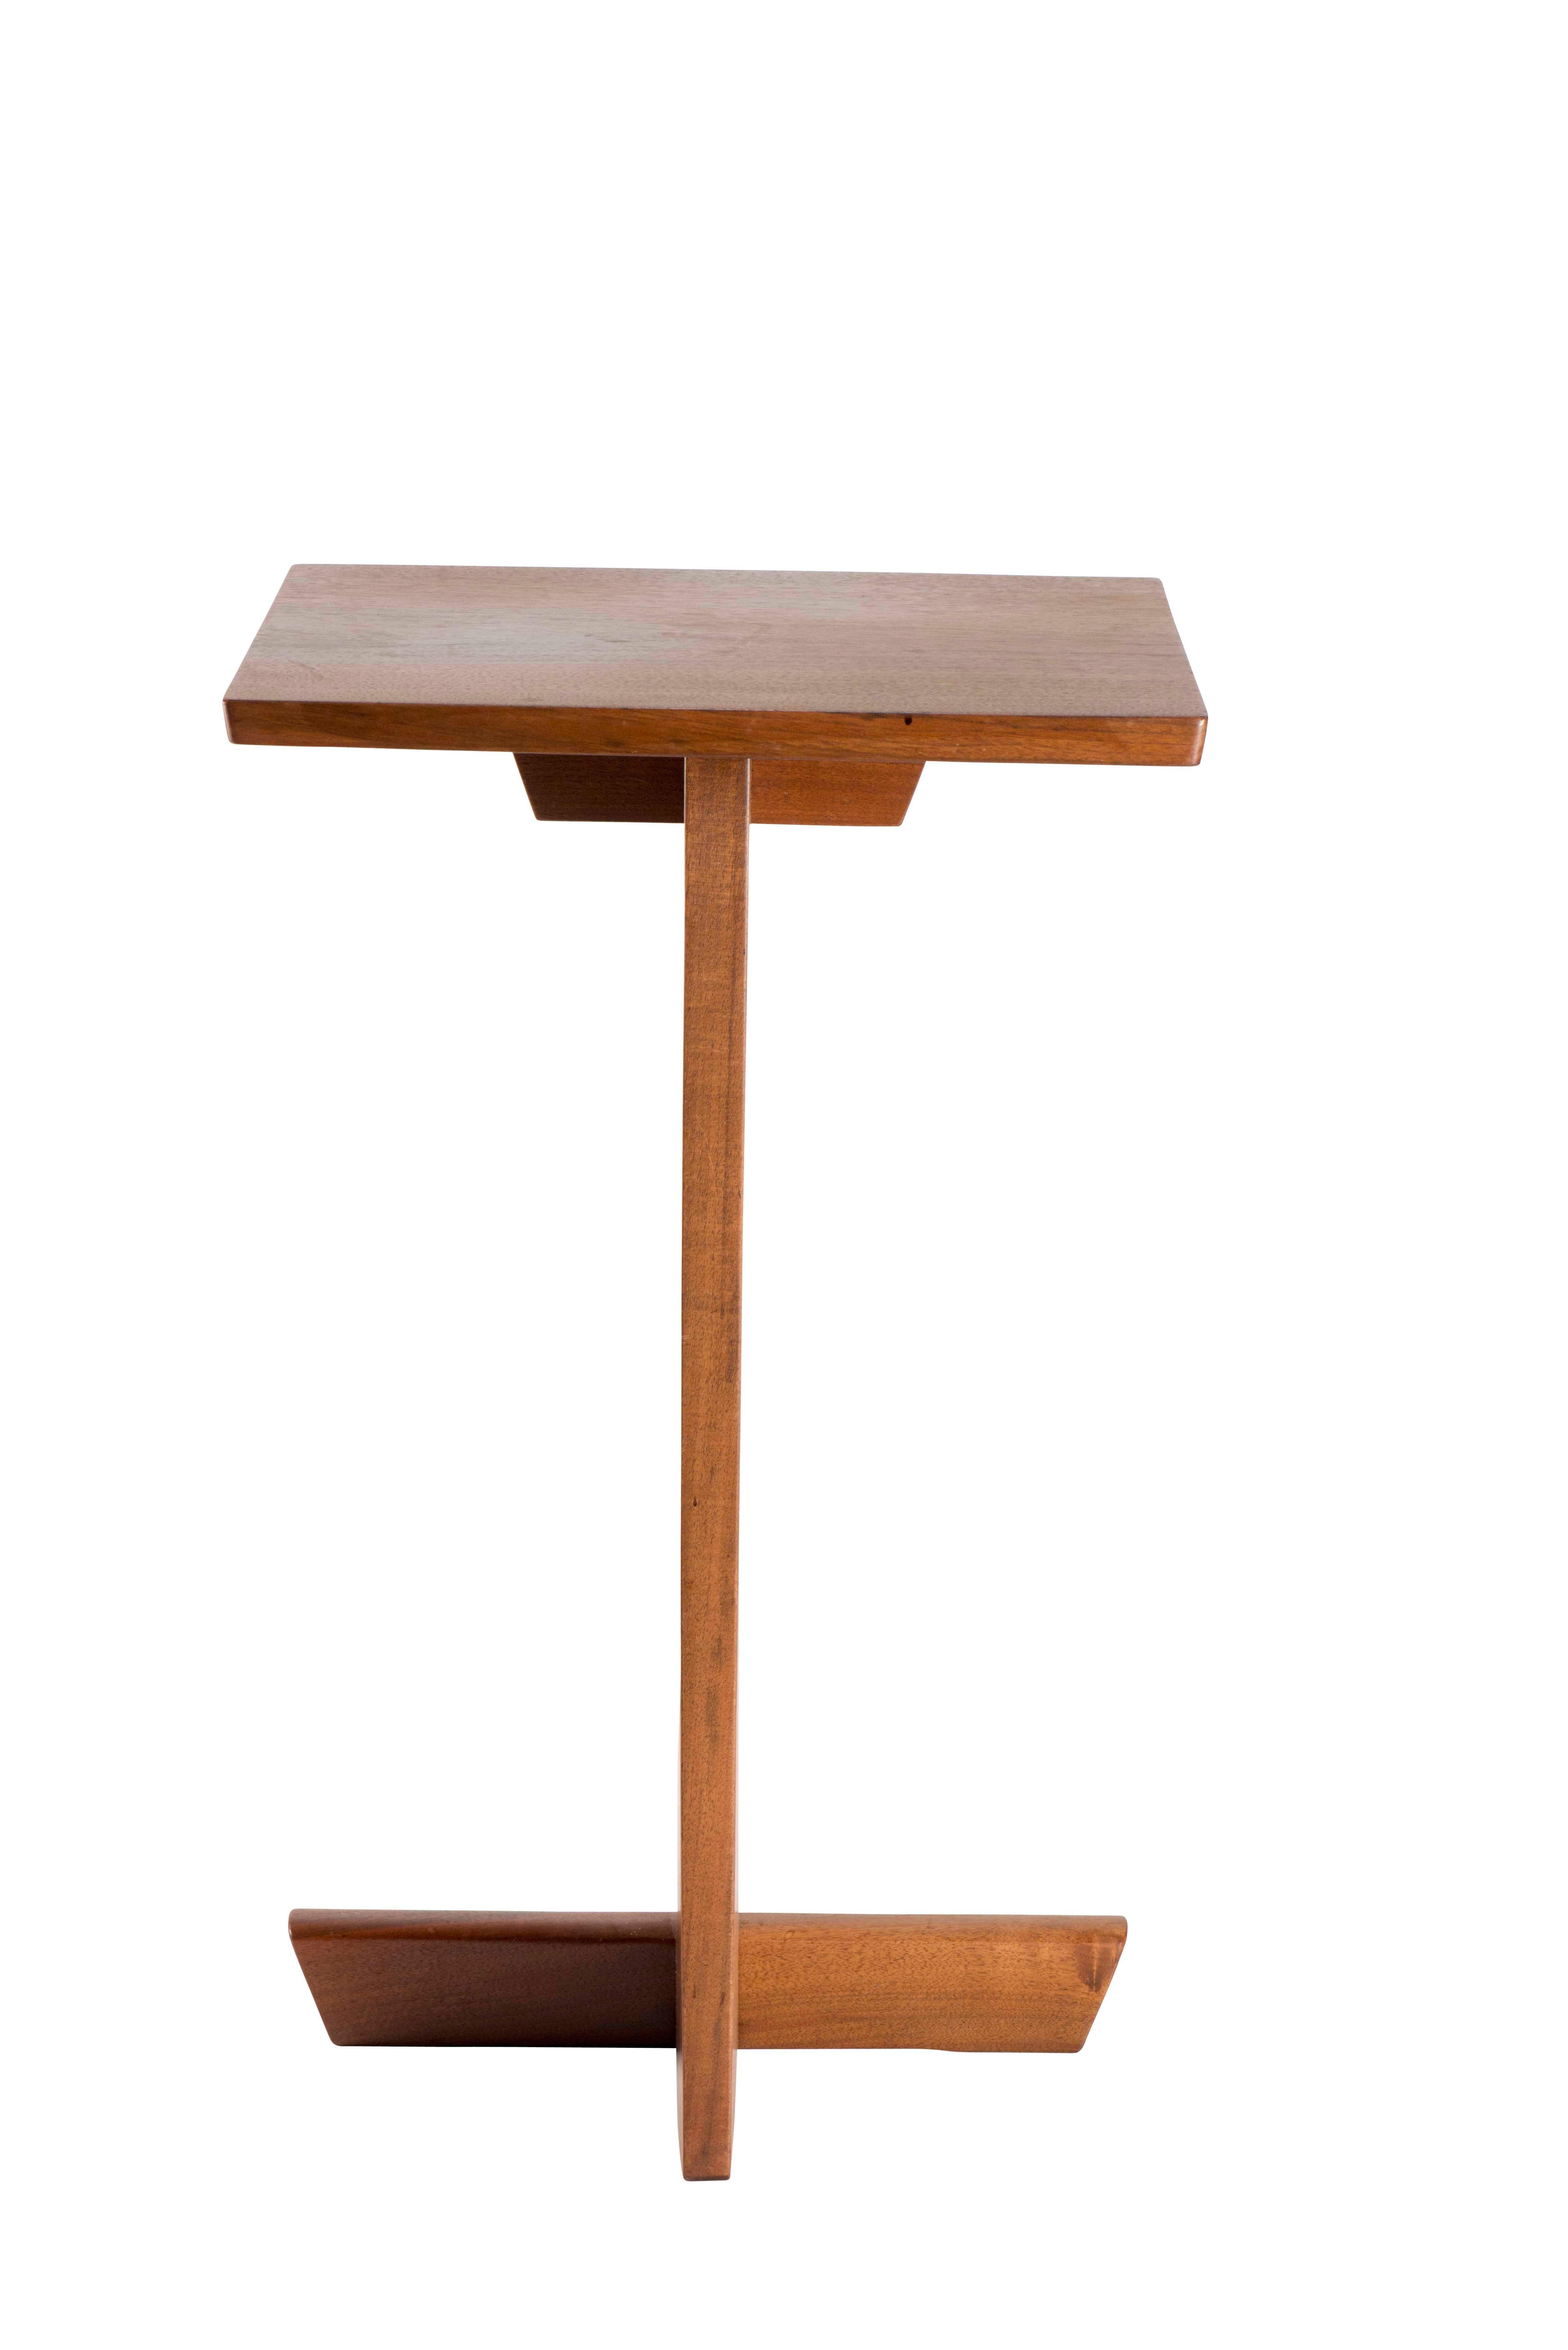 Organic Modern George Nakashima Pedestal Table